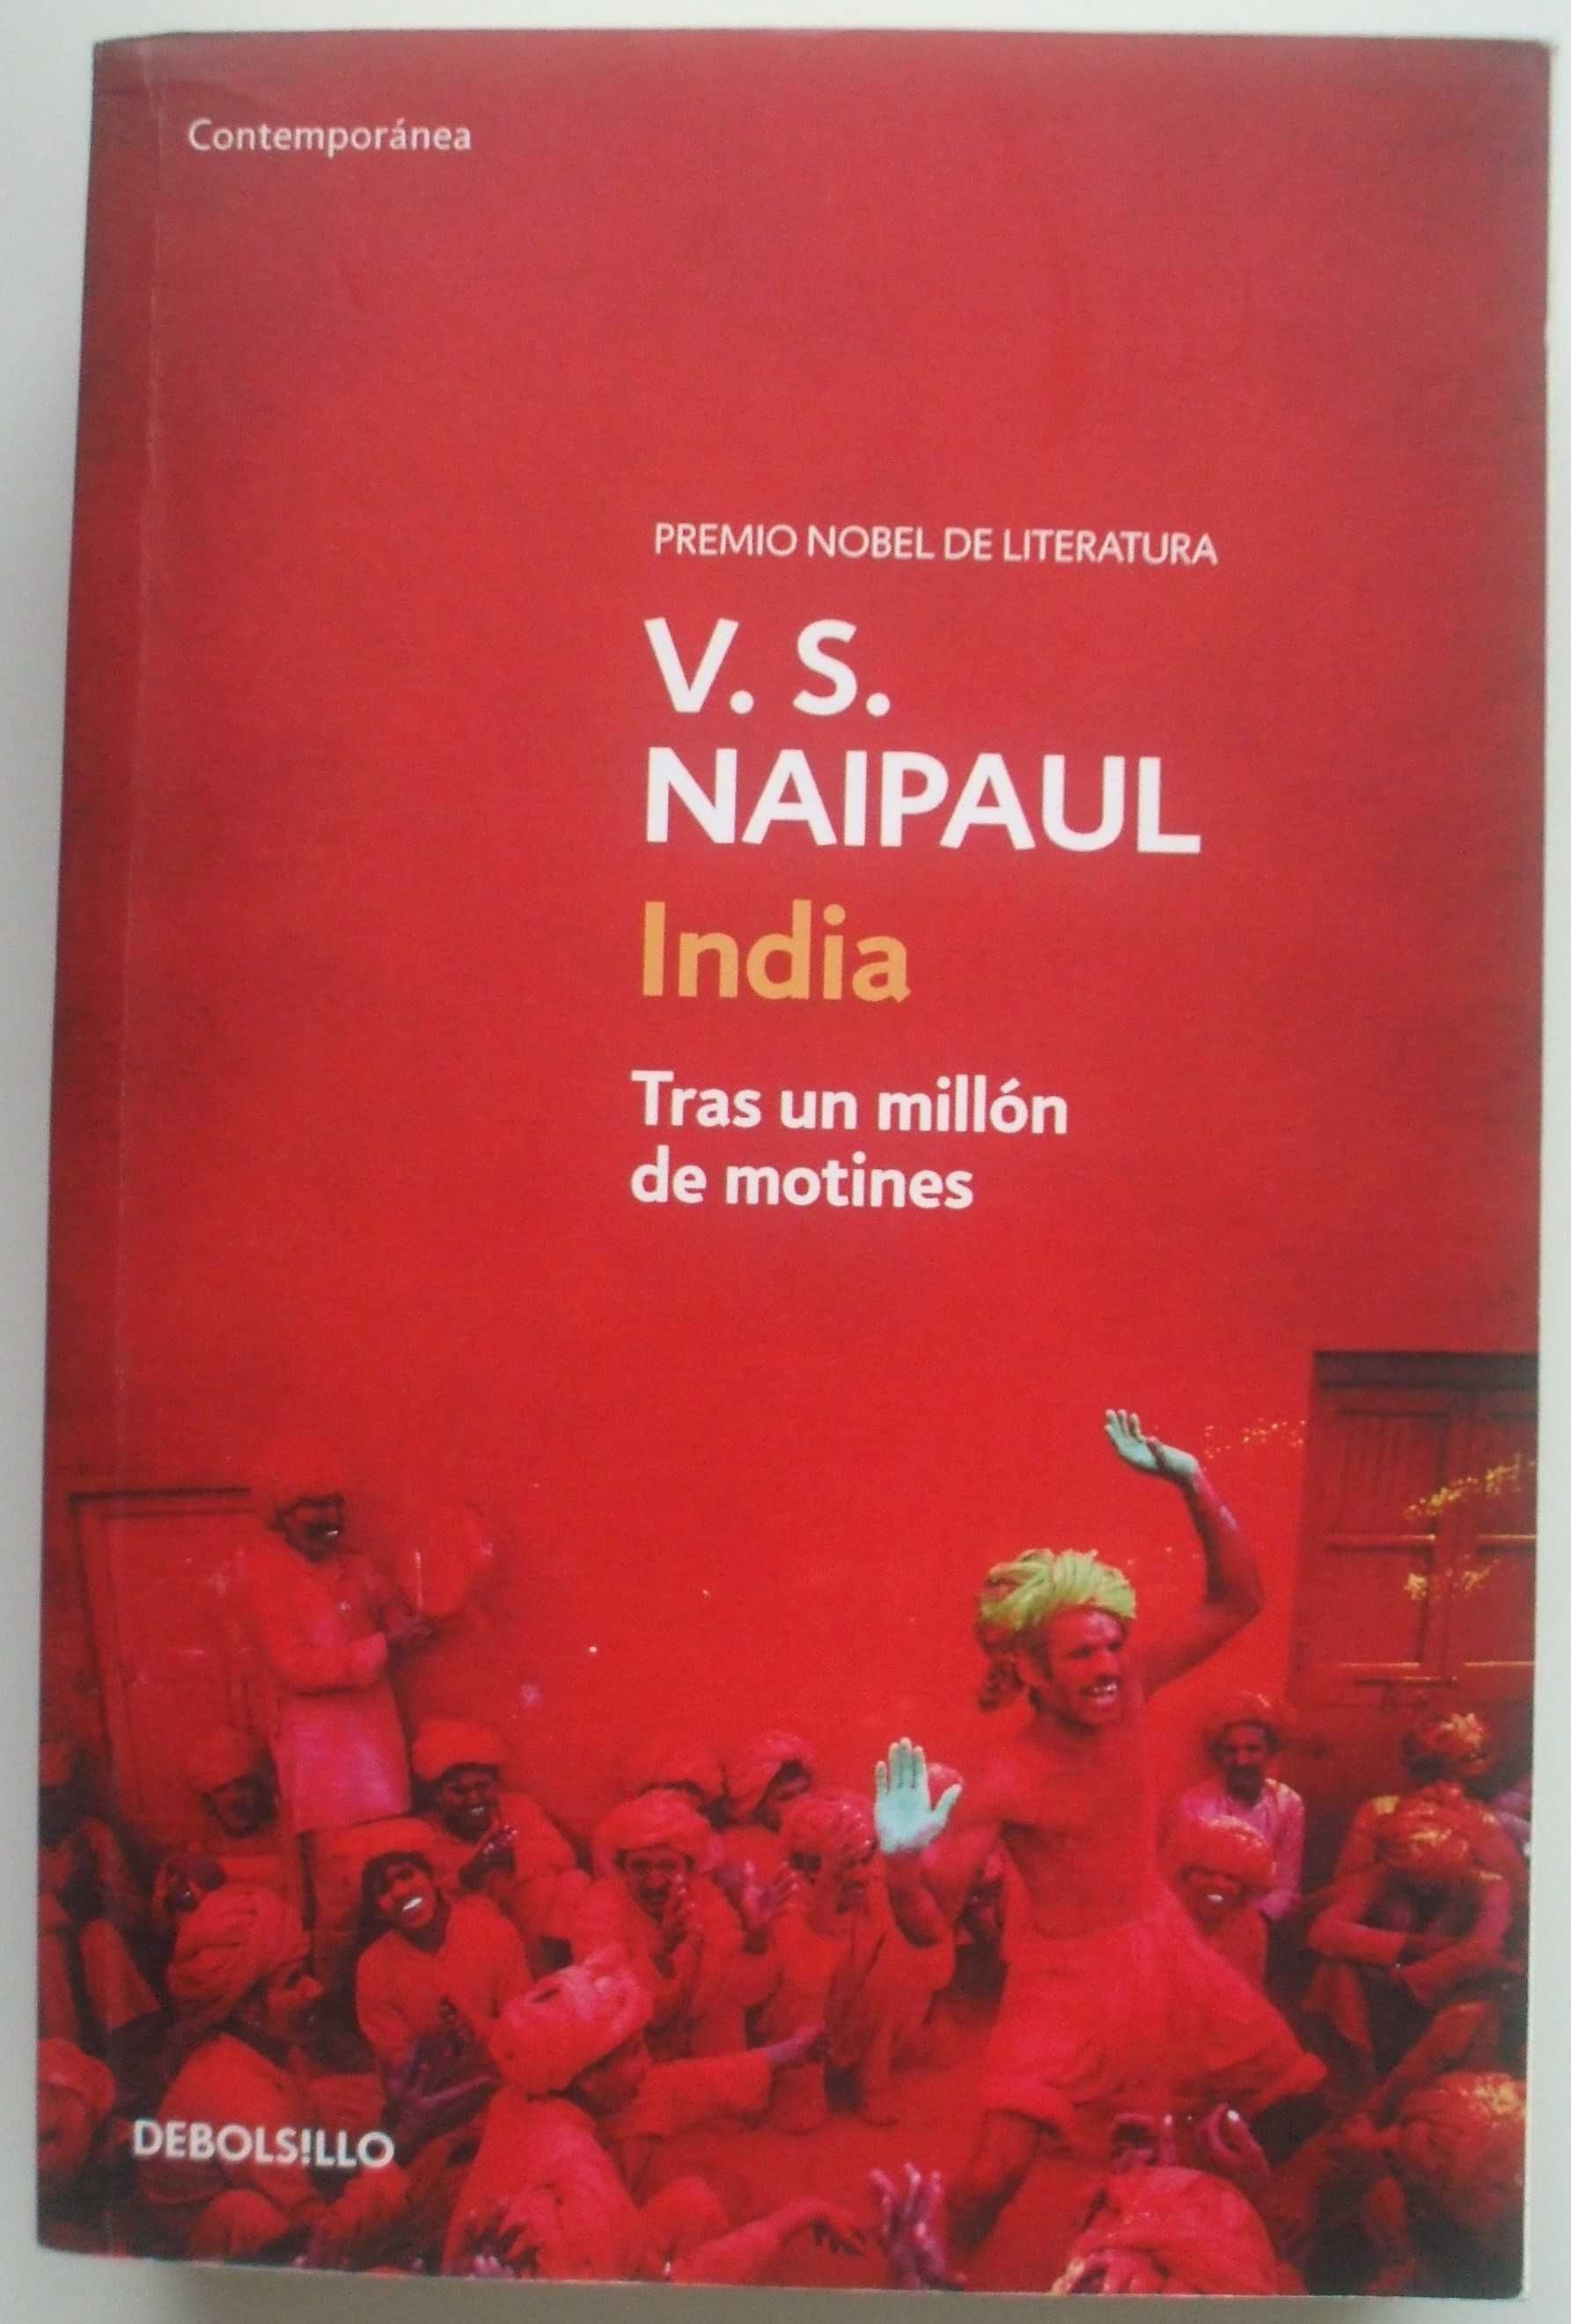 India - tras un millón de motines, V. S. Naipaul